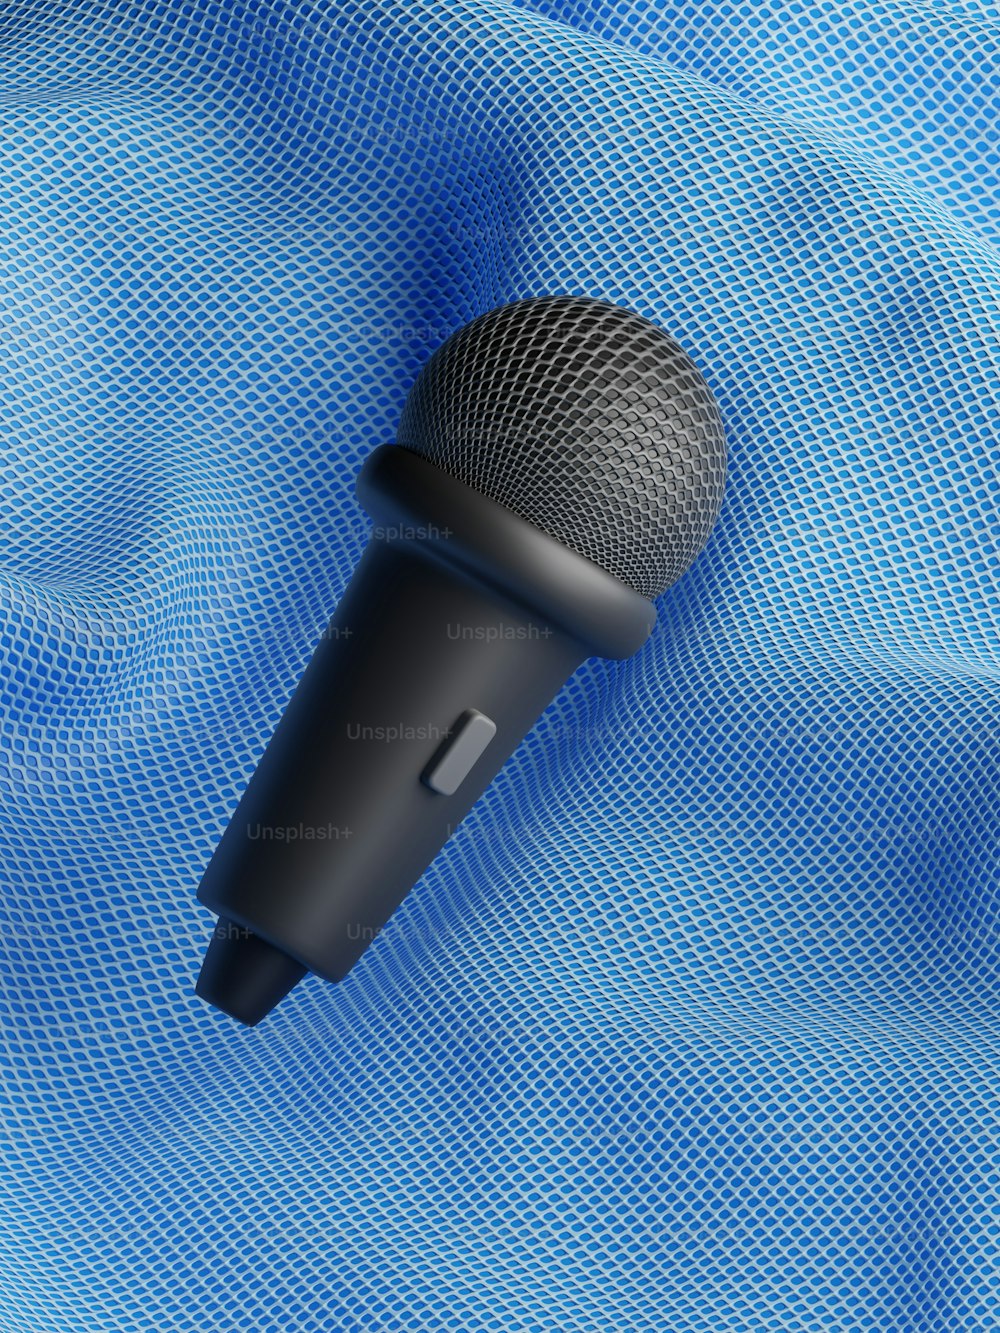 ein schwarzes Mikrofon auf blauem Hintergrund